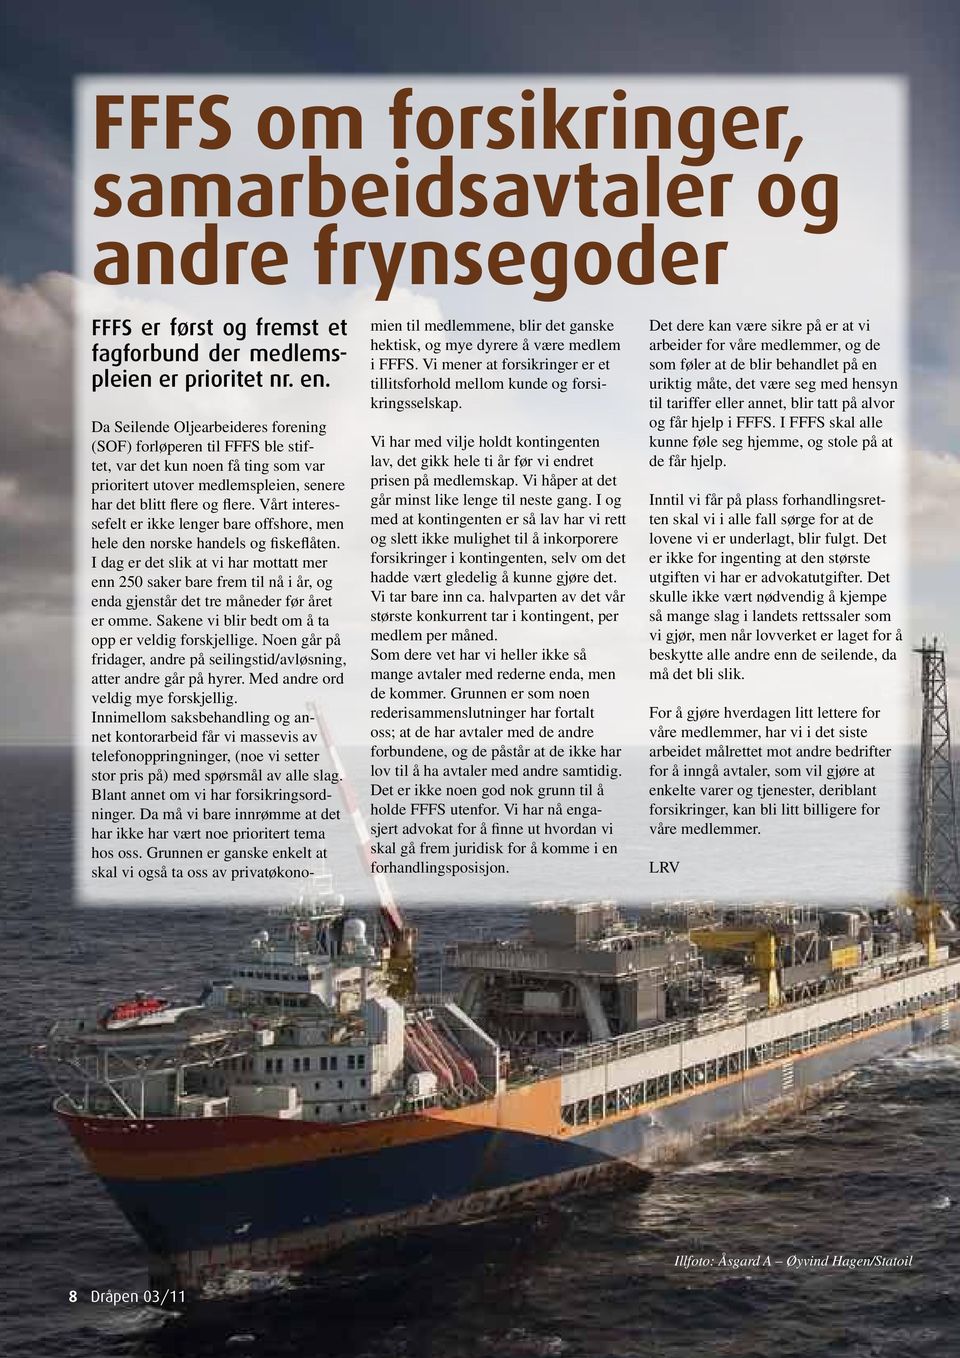 Vårt interessefelt er ikke lenger bare offshore, men hele den norske handels og fiskeflåten.